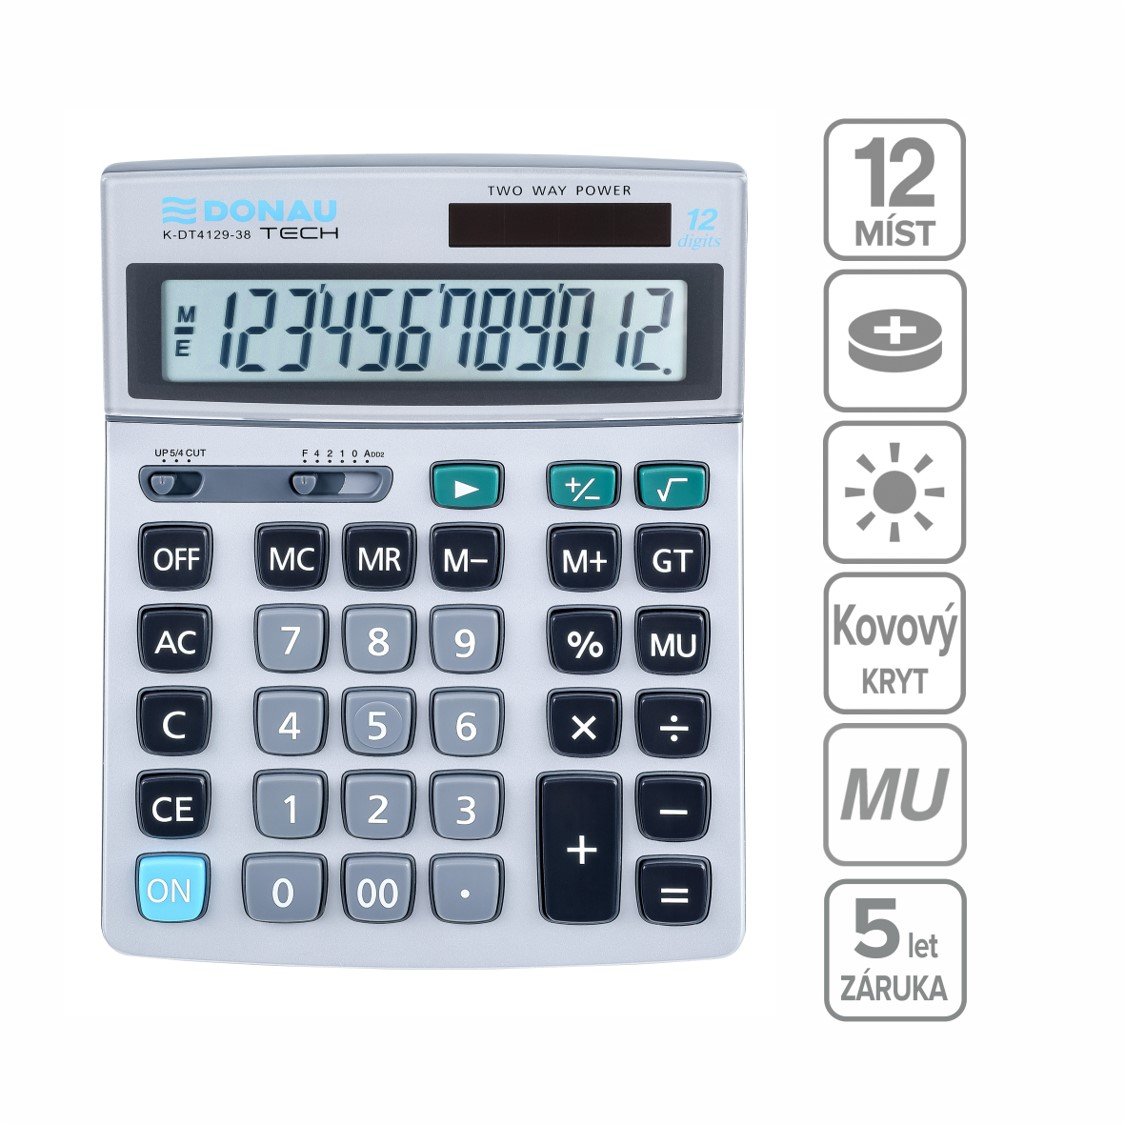 DONAU kancelářská kalkulačka DONAU TECH 4129, 12místná, stříbrná